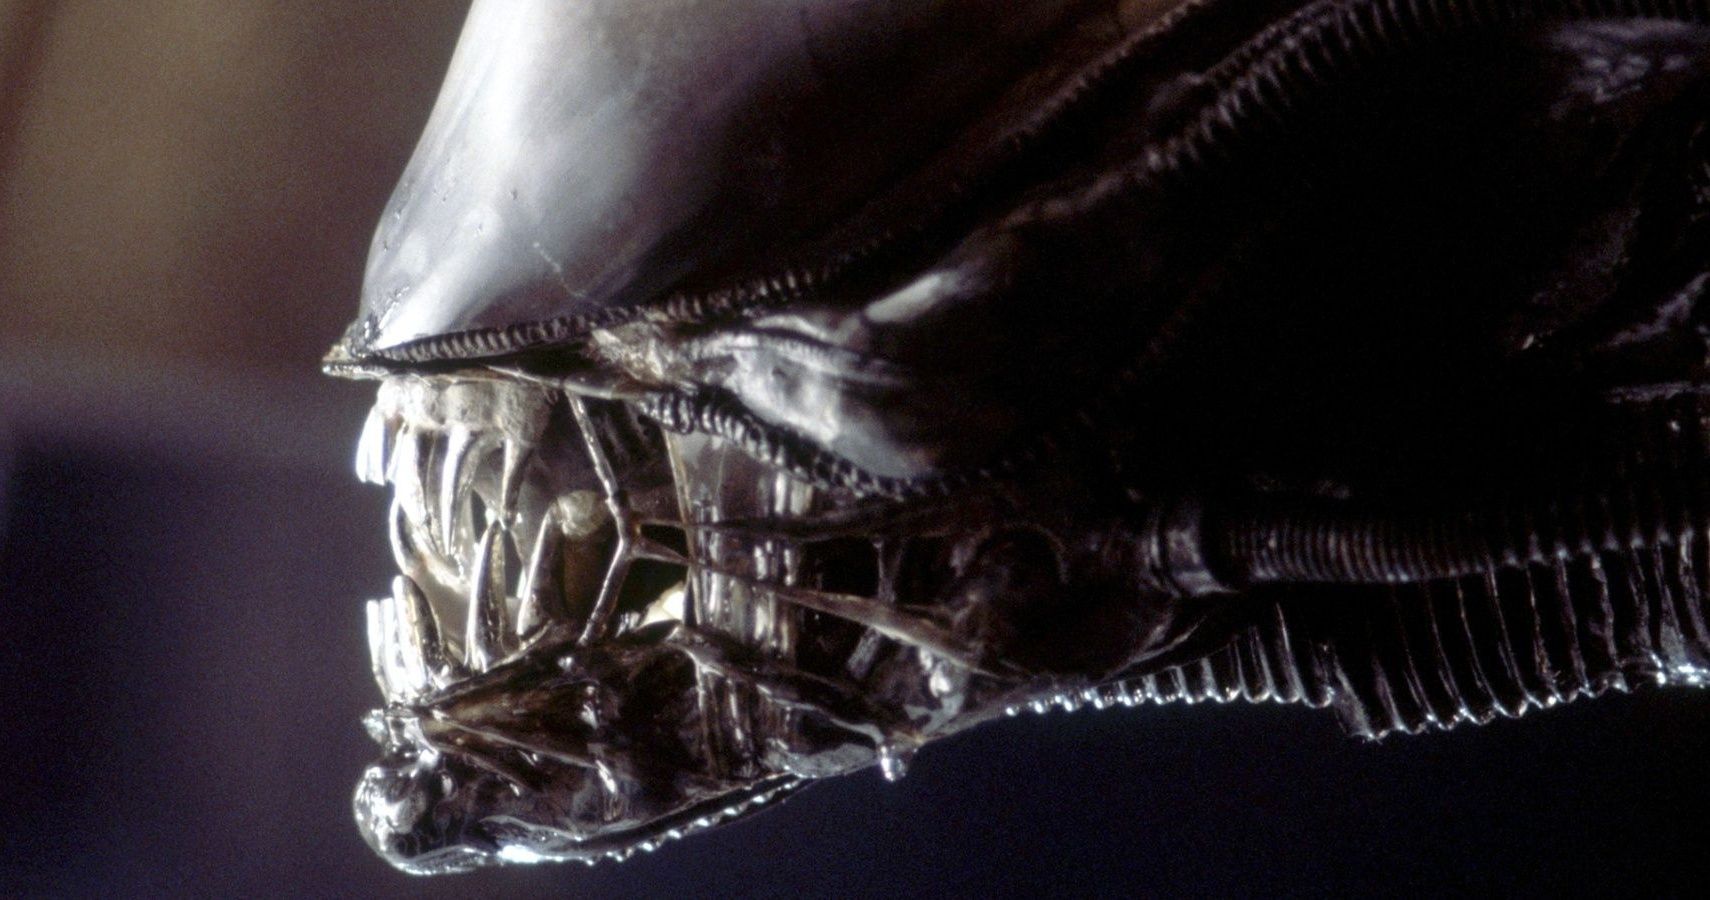 14 películas similares a Alien (no sabías que salía antes)